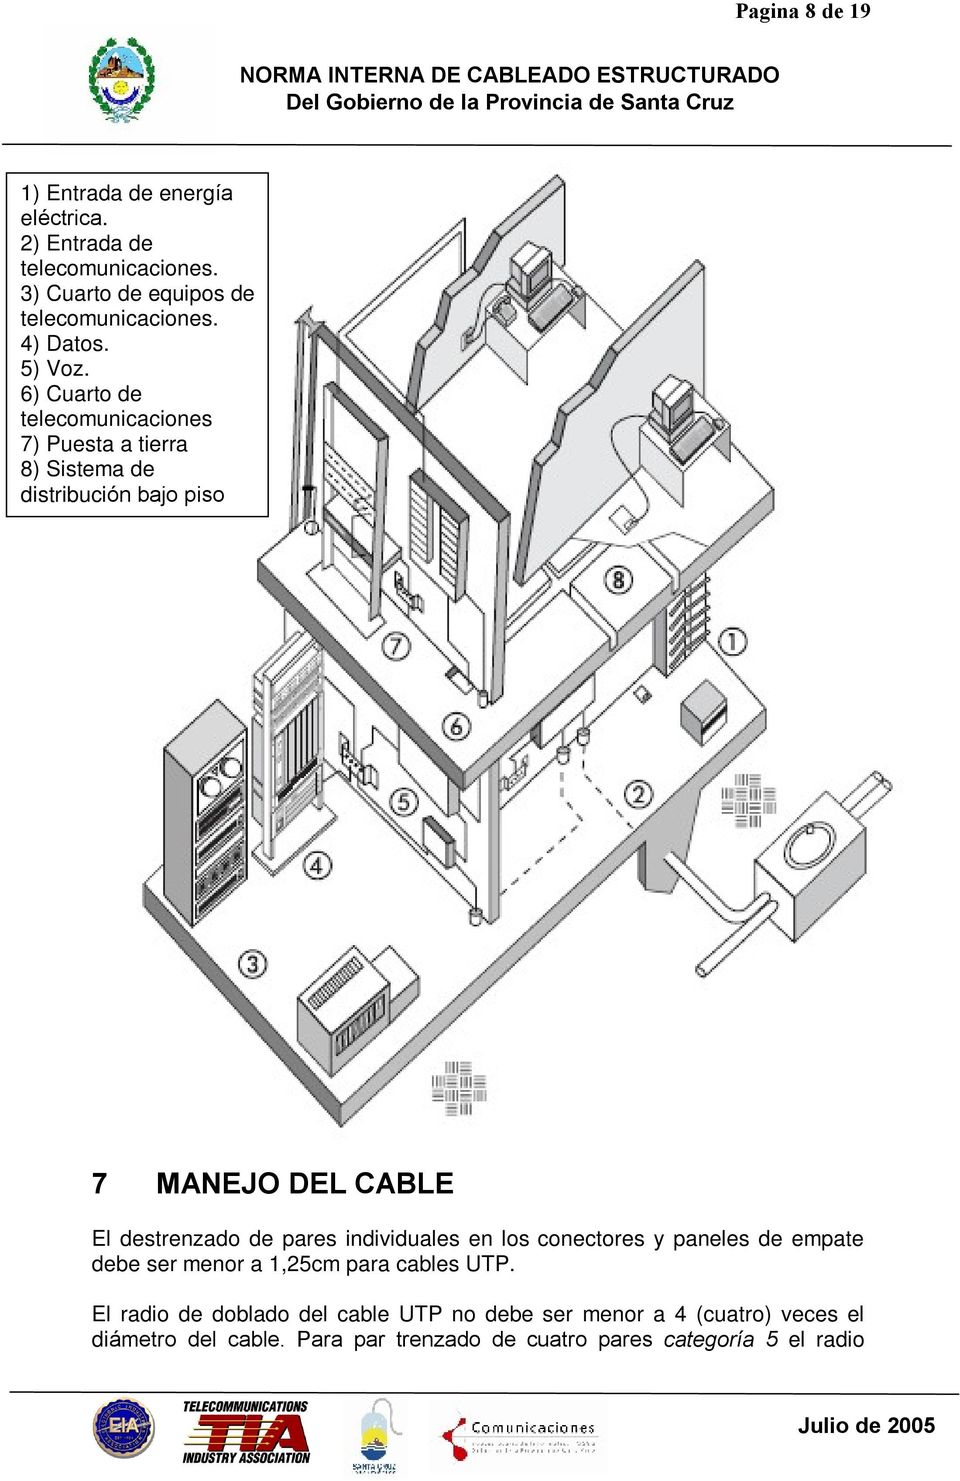 6) Cuarto de telecomunicaciones 7) Puesta a tierra 8) Sistema de distribución bajo piso 7 MANEJO DEL CABLE El destrenzado de